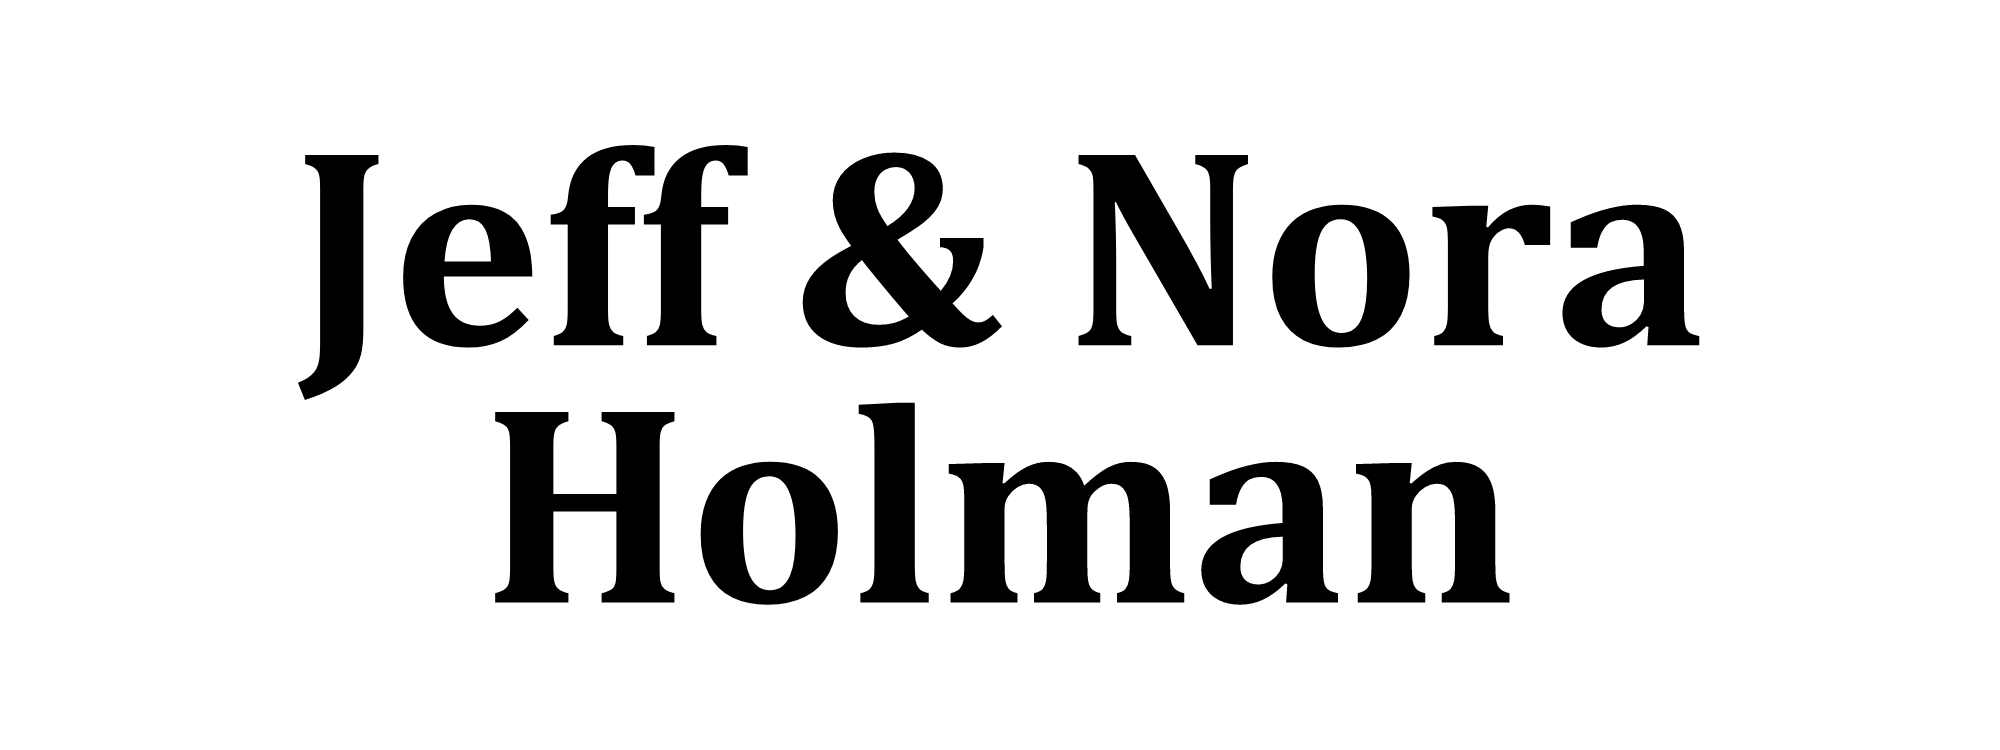 Jeff and Nora Holman logo.png